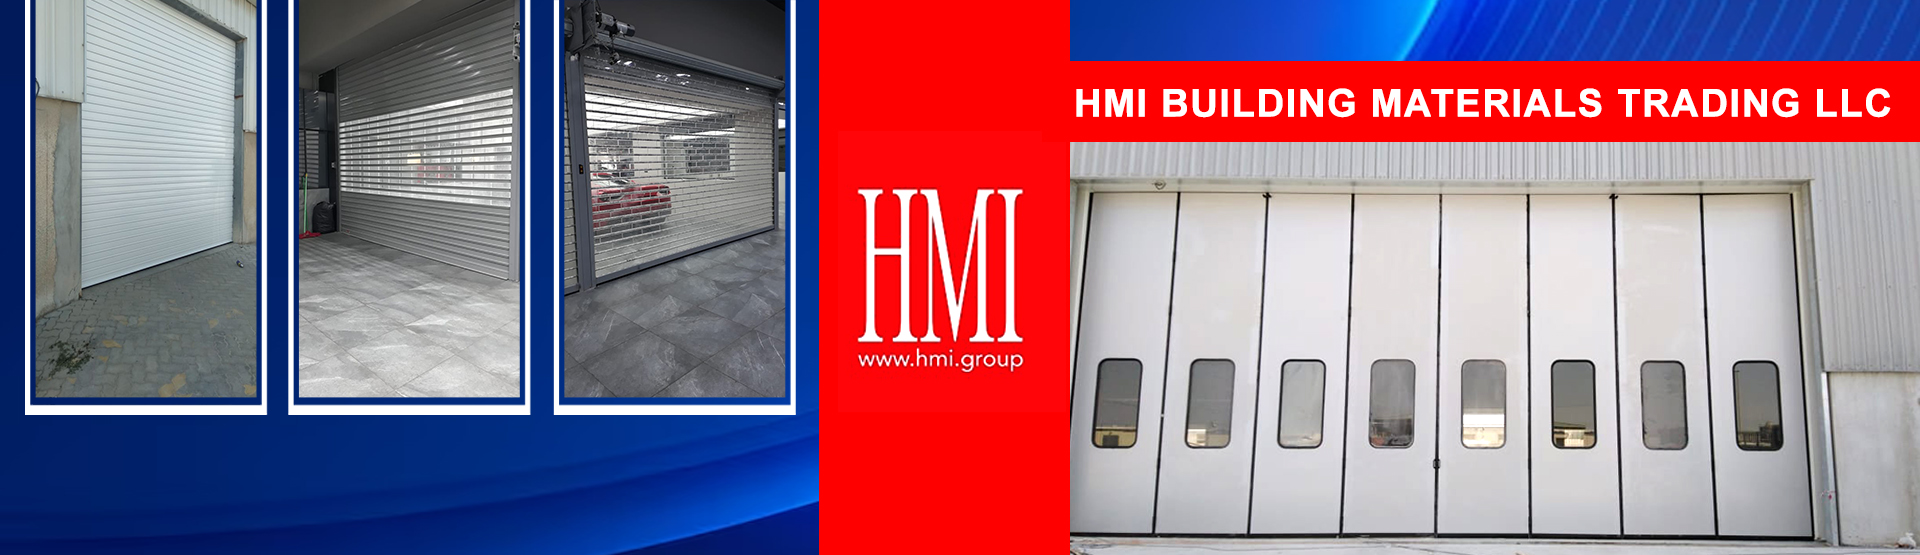 HMI BUILDING MATERIALS TRADING LLC